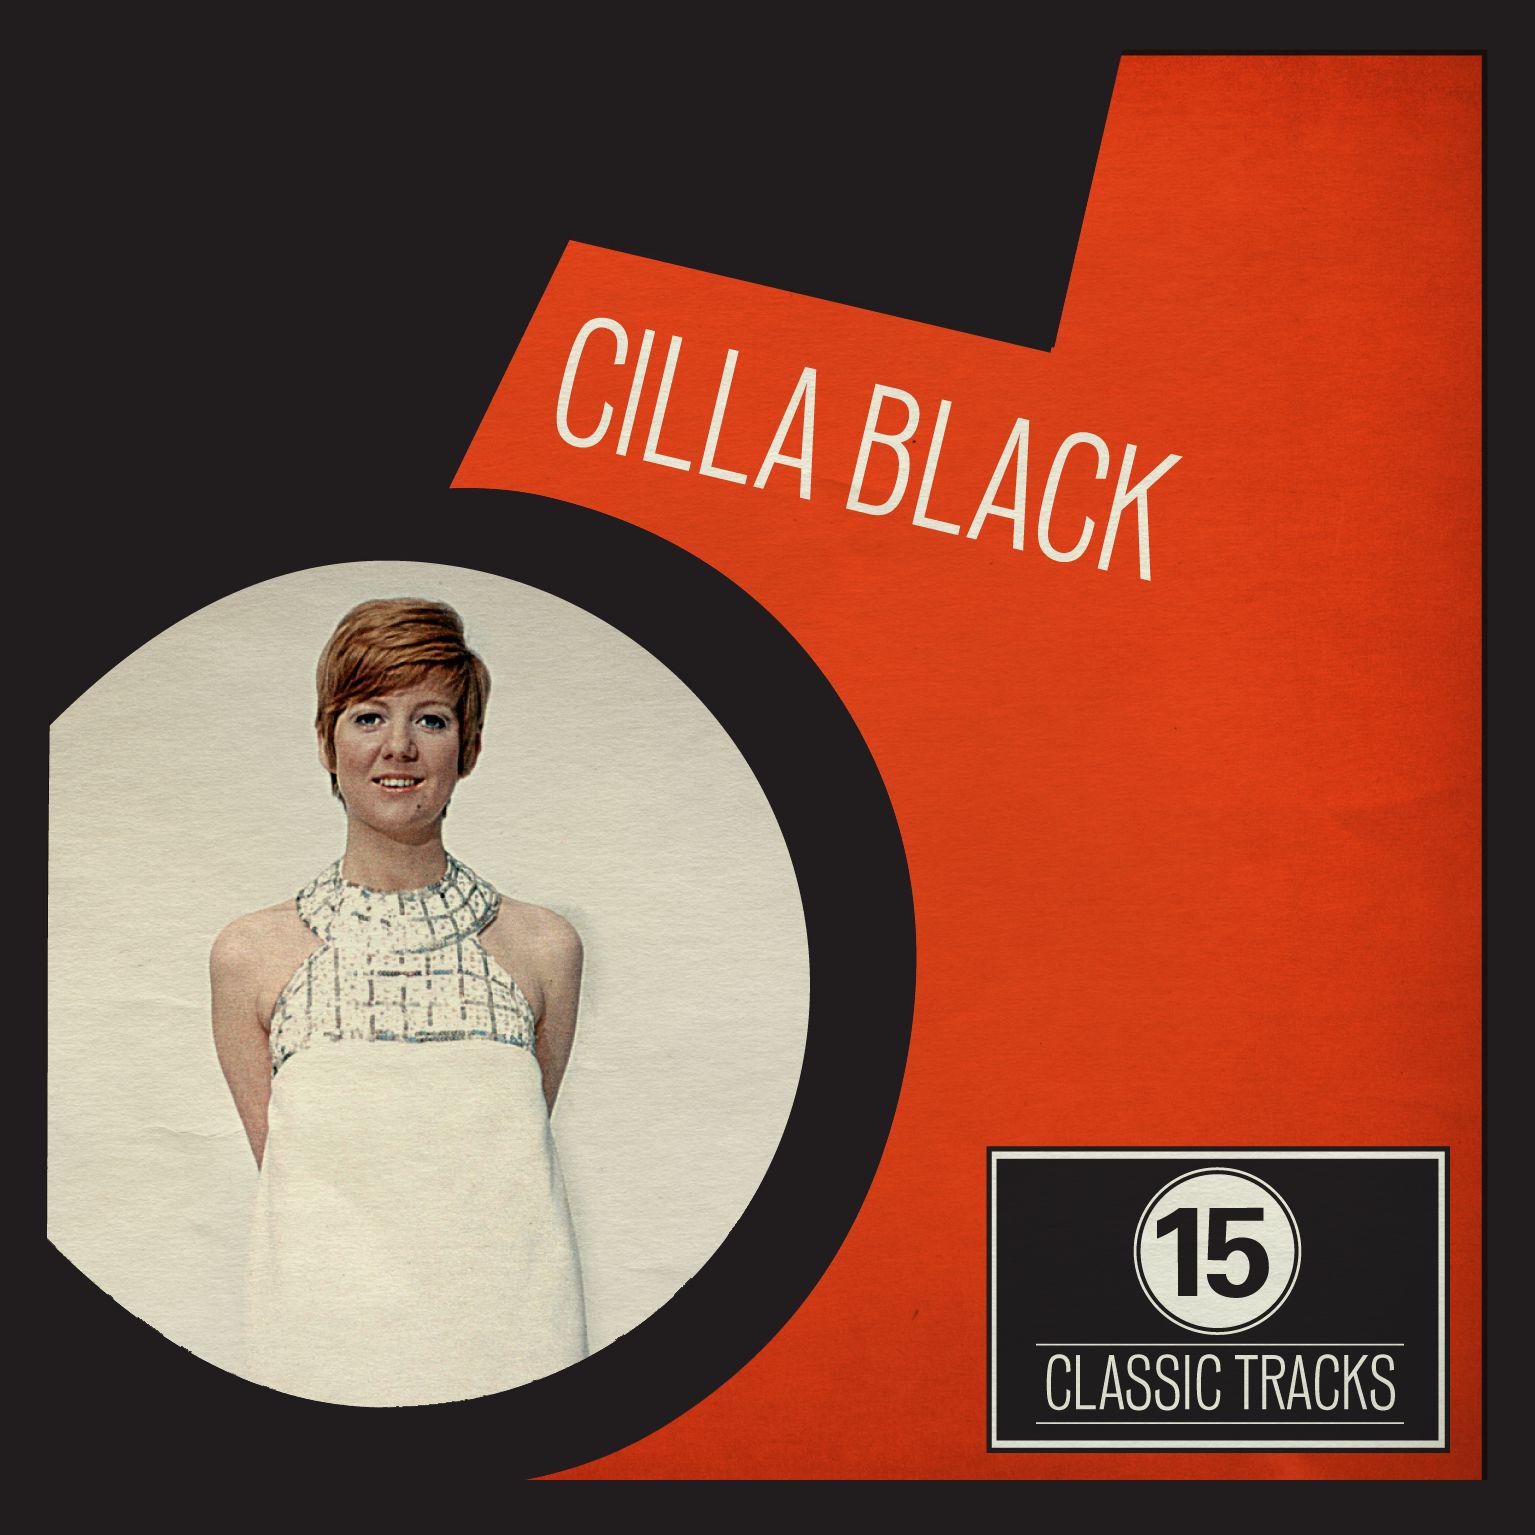 15 Classic Tracks: Cilla Black